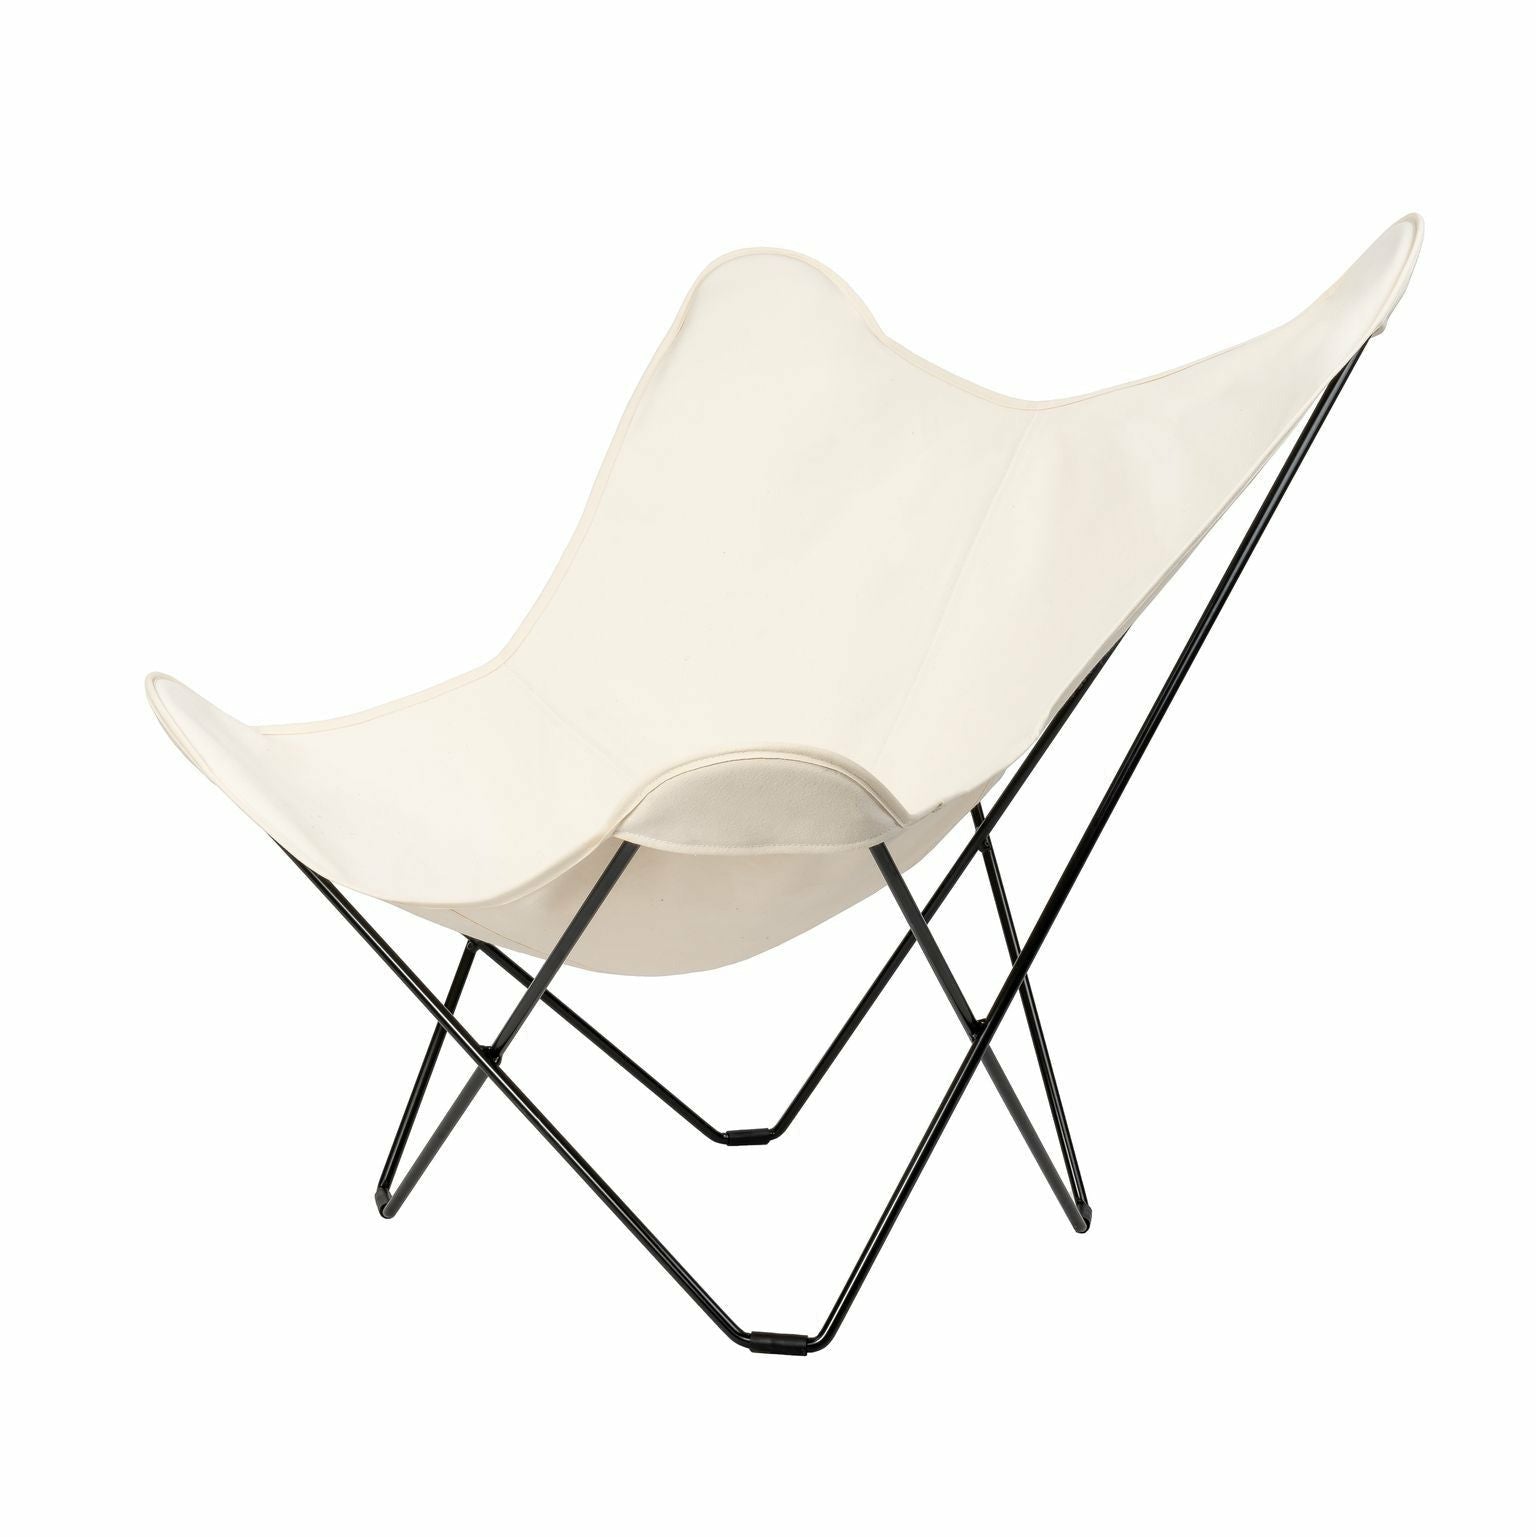 Cuero Bomull Canvas Mariposa stol, vit med svart ram